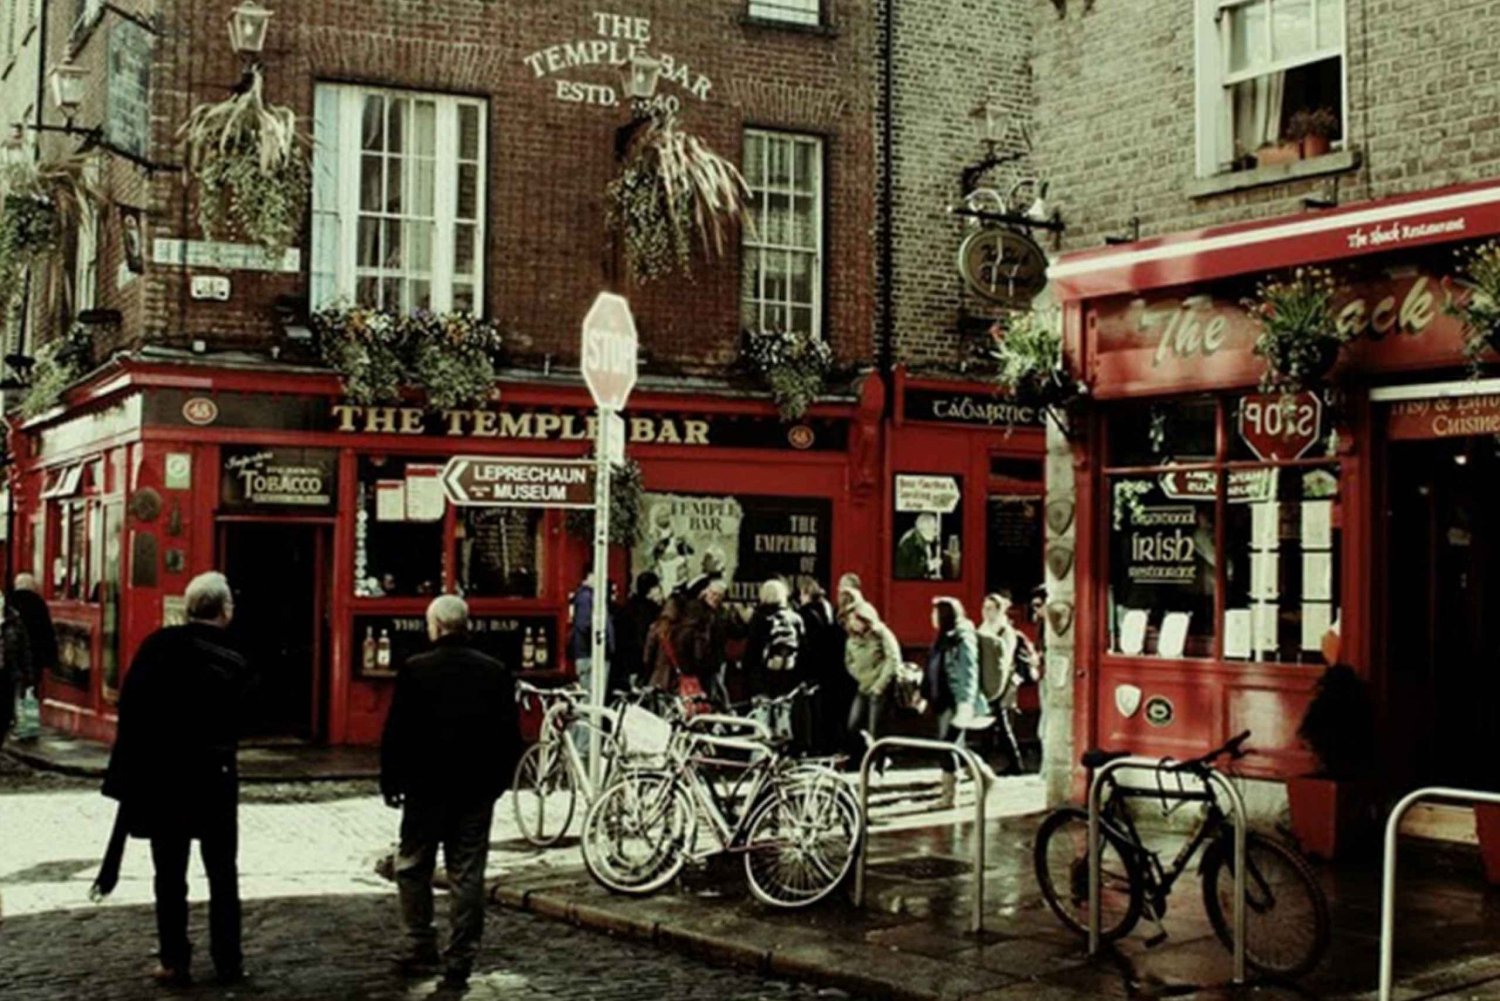 Dublino: Tour guidato di Temple Bar con delitto misterioso (inglese)